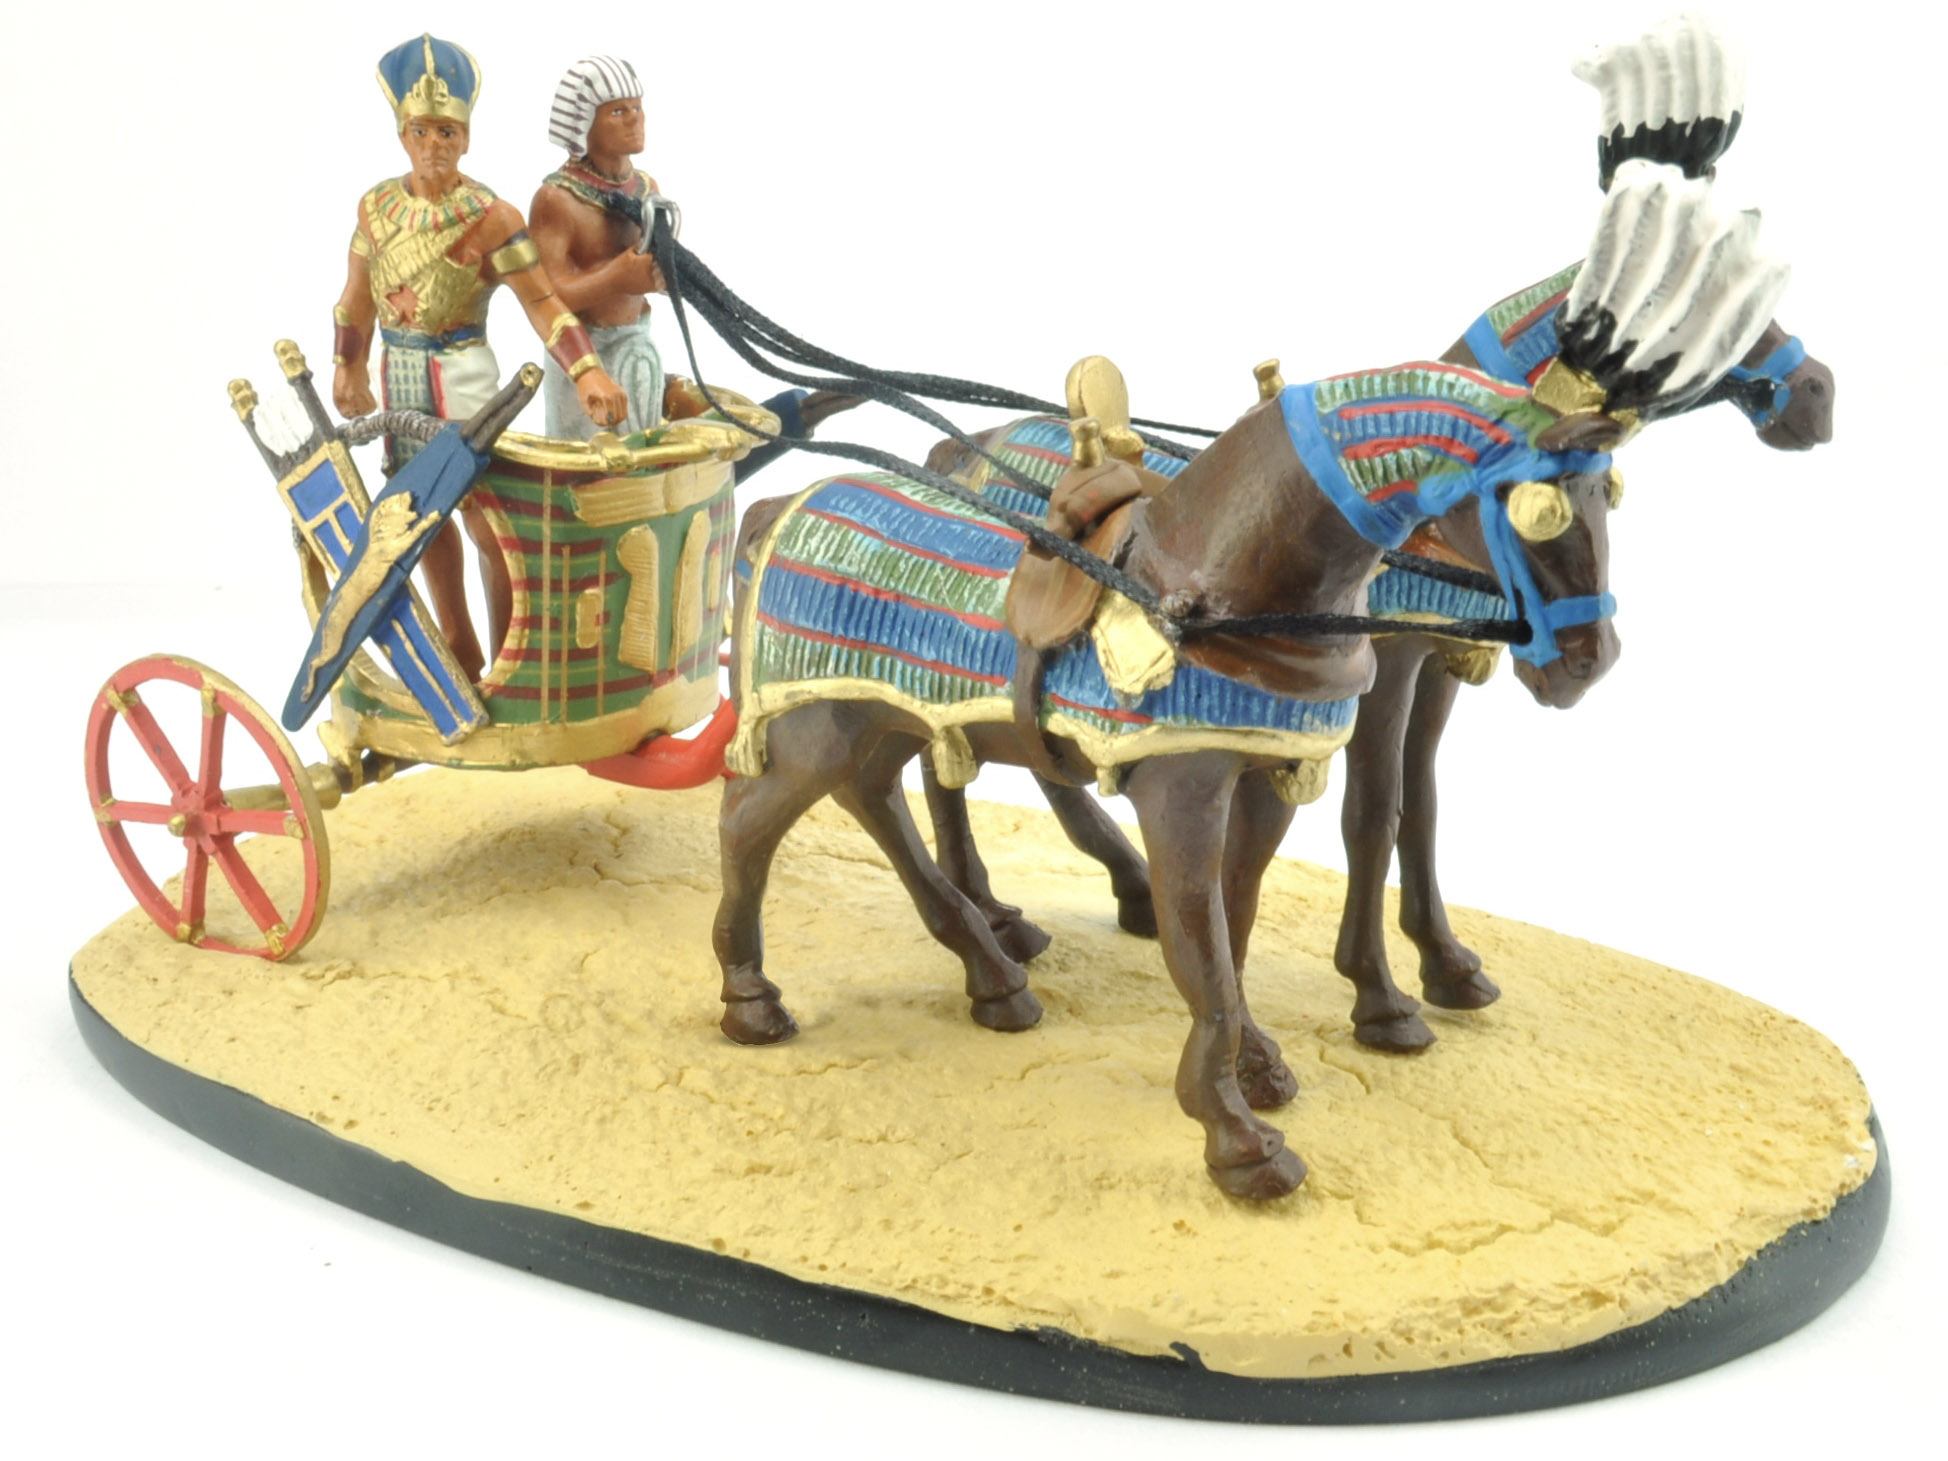 Il Faraone con il suo carro da guerra - The Pharaoh and his War Chariot